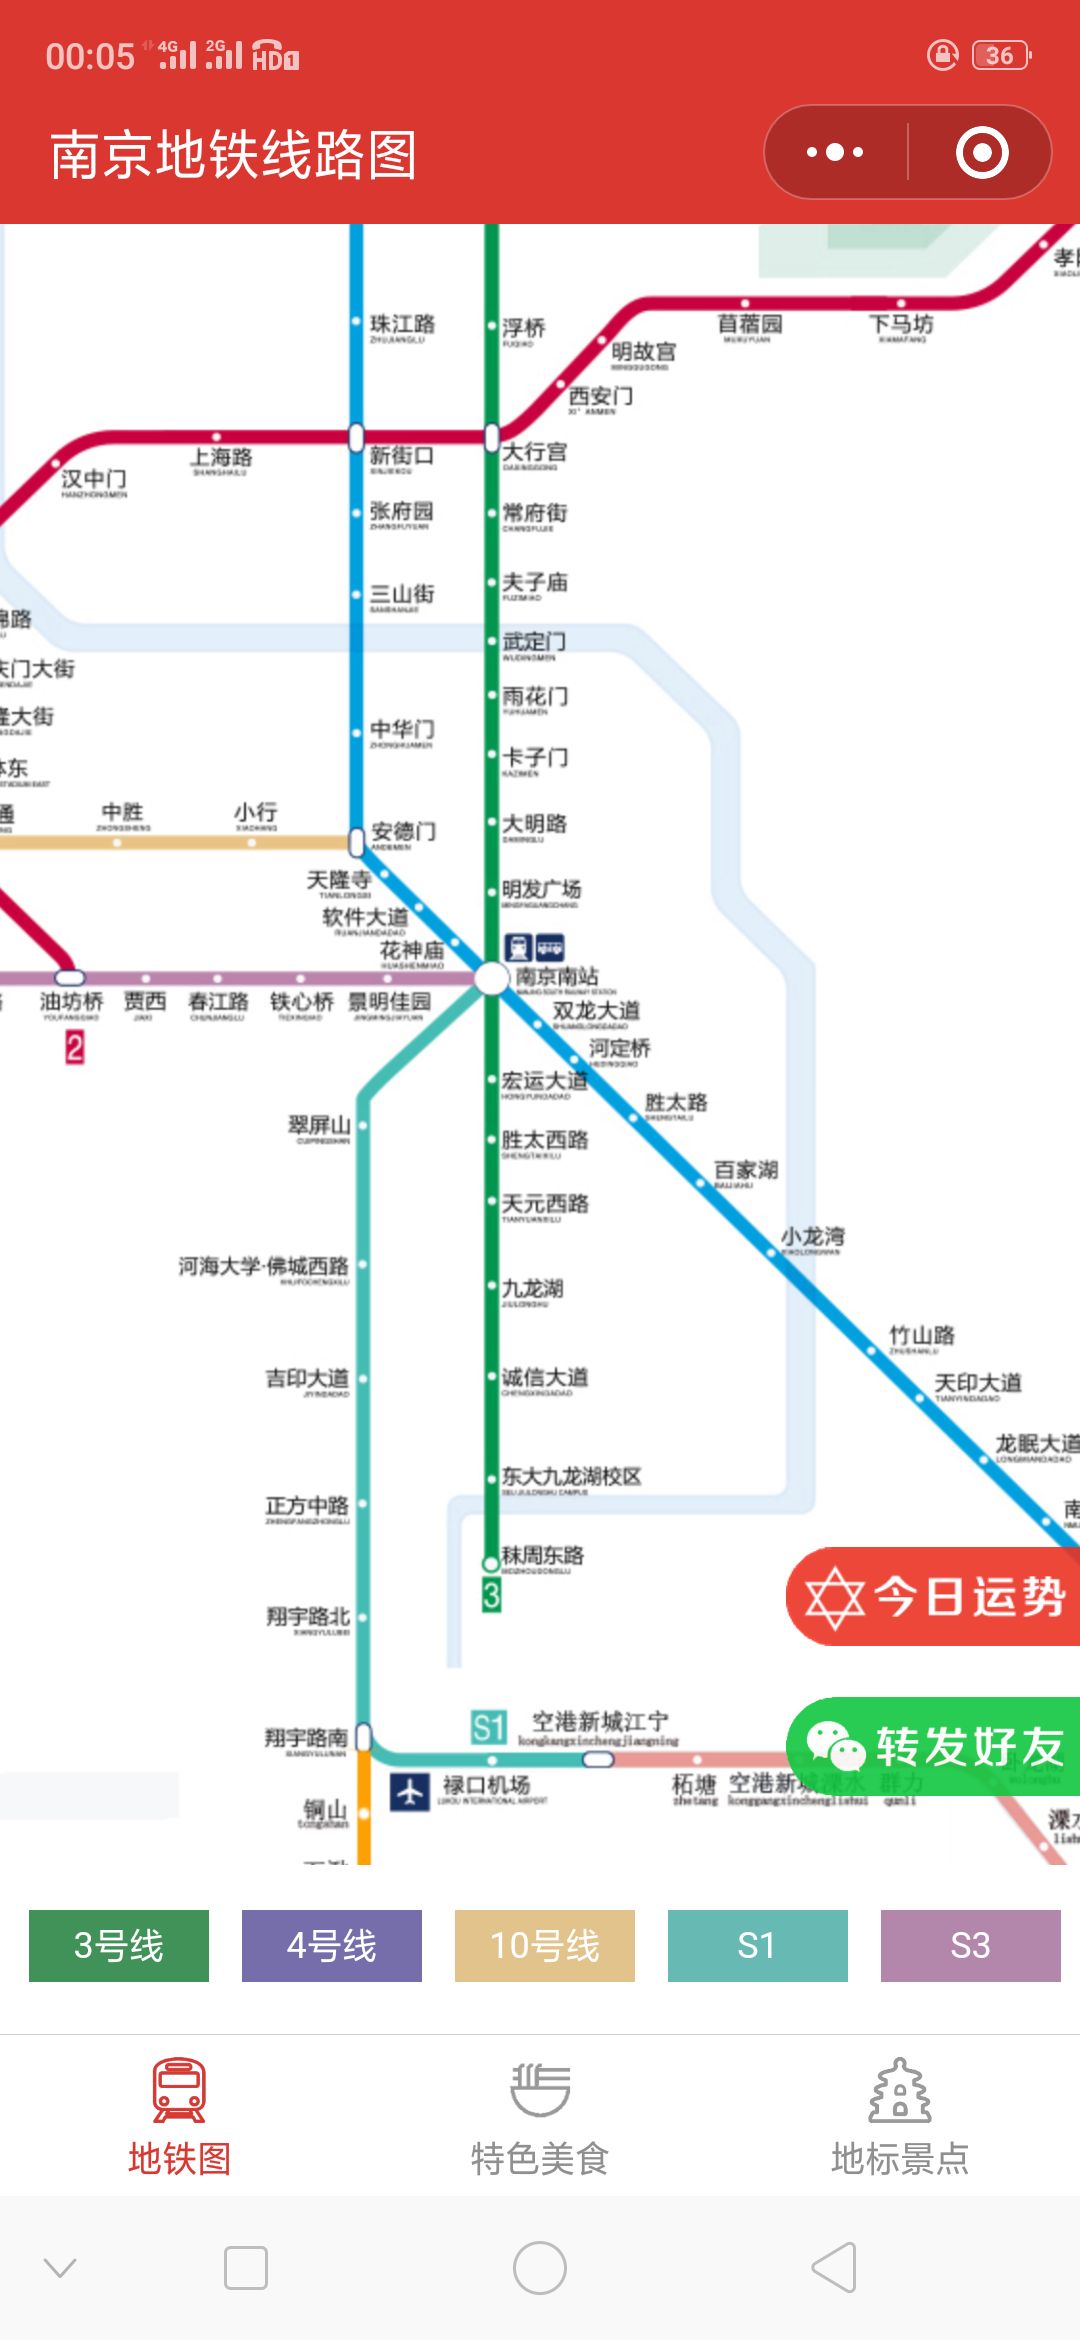 我从南京机场到总统府有地铁做吗